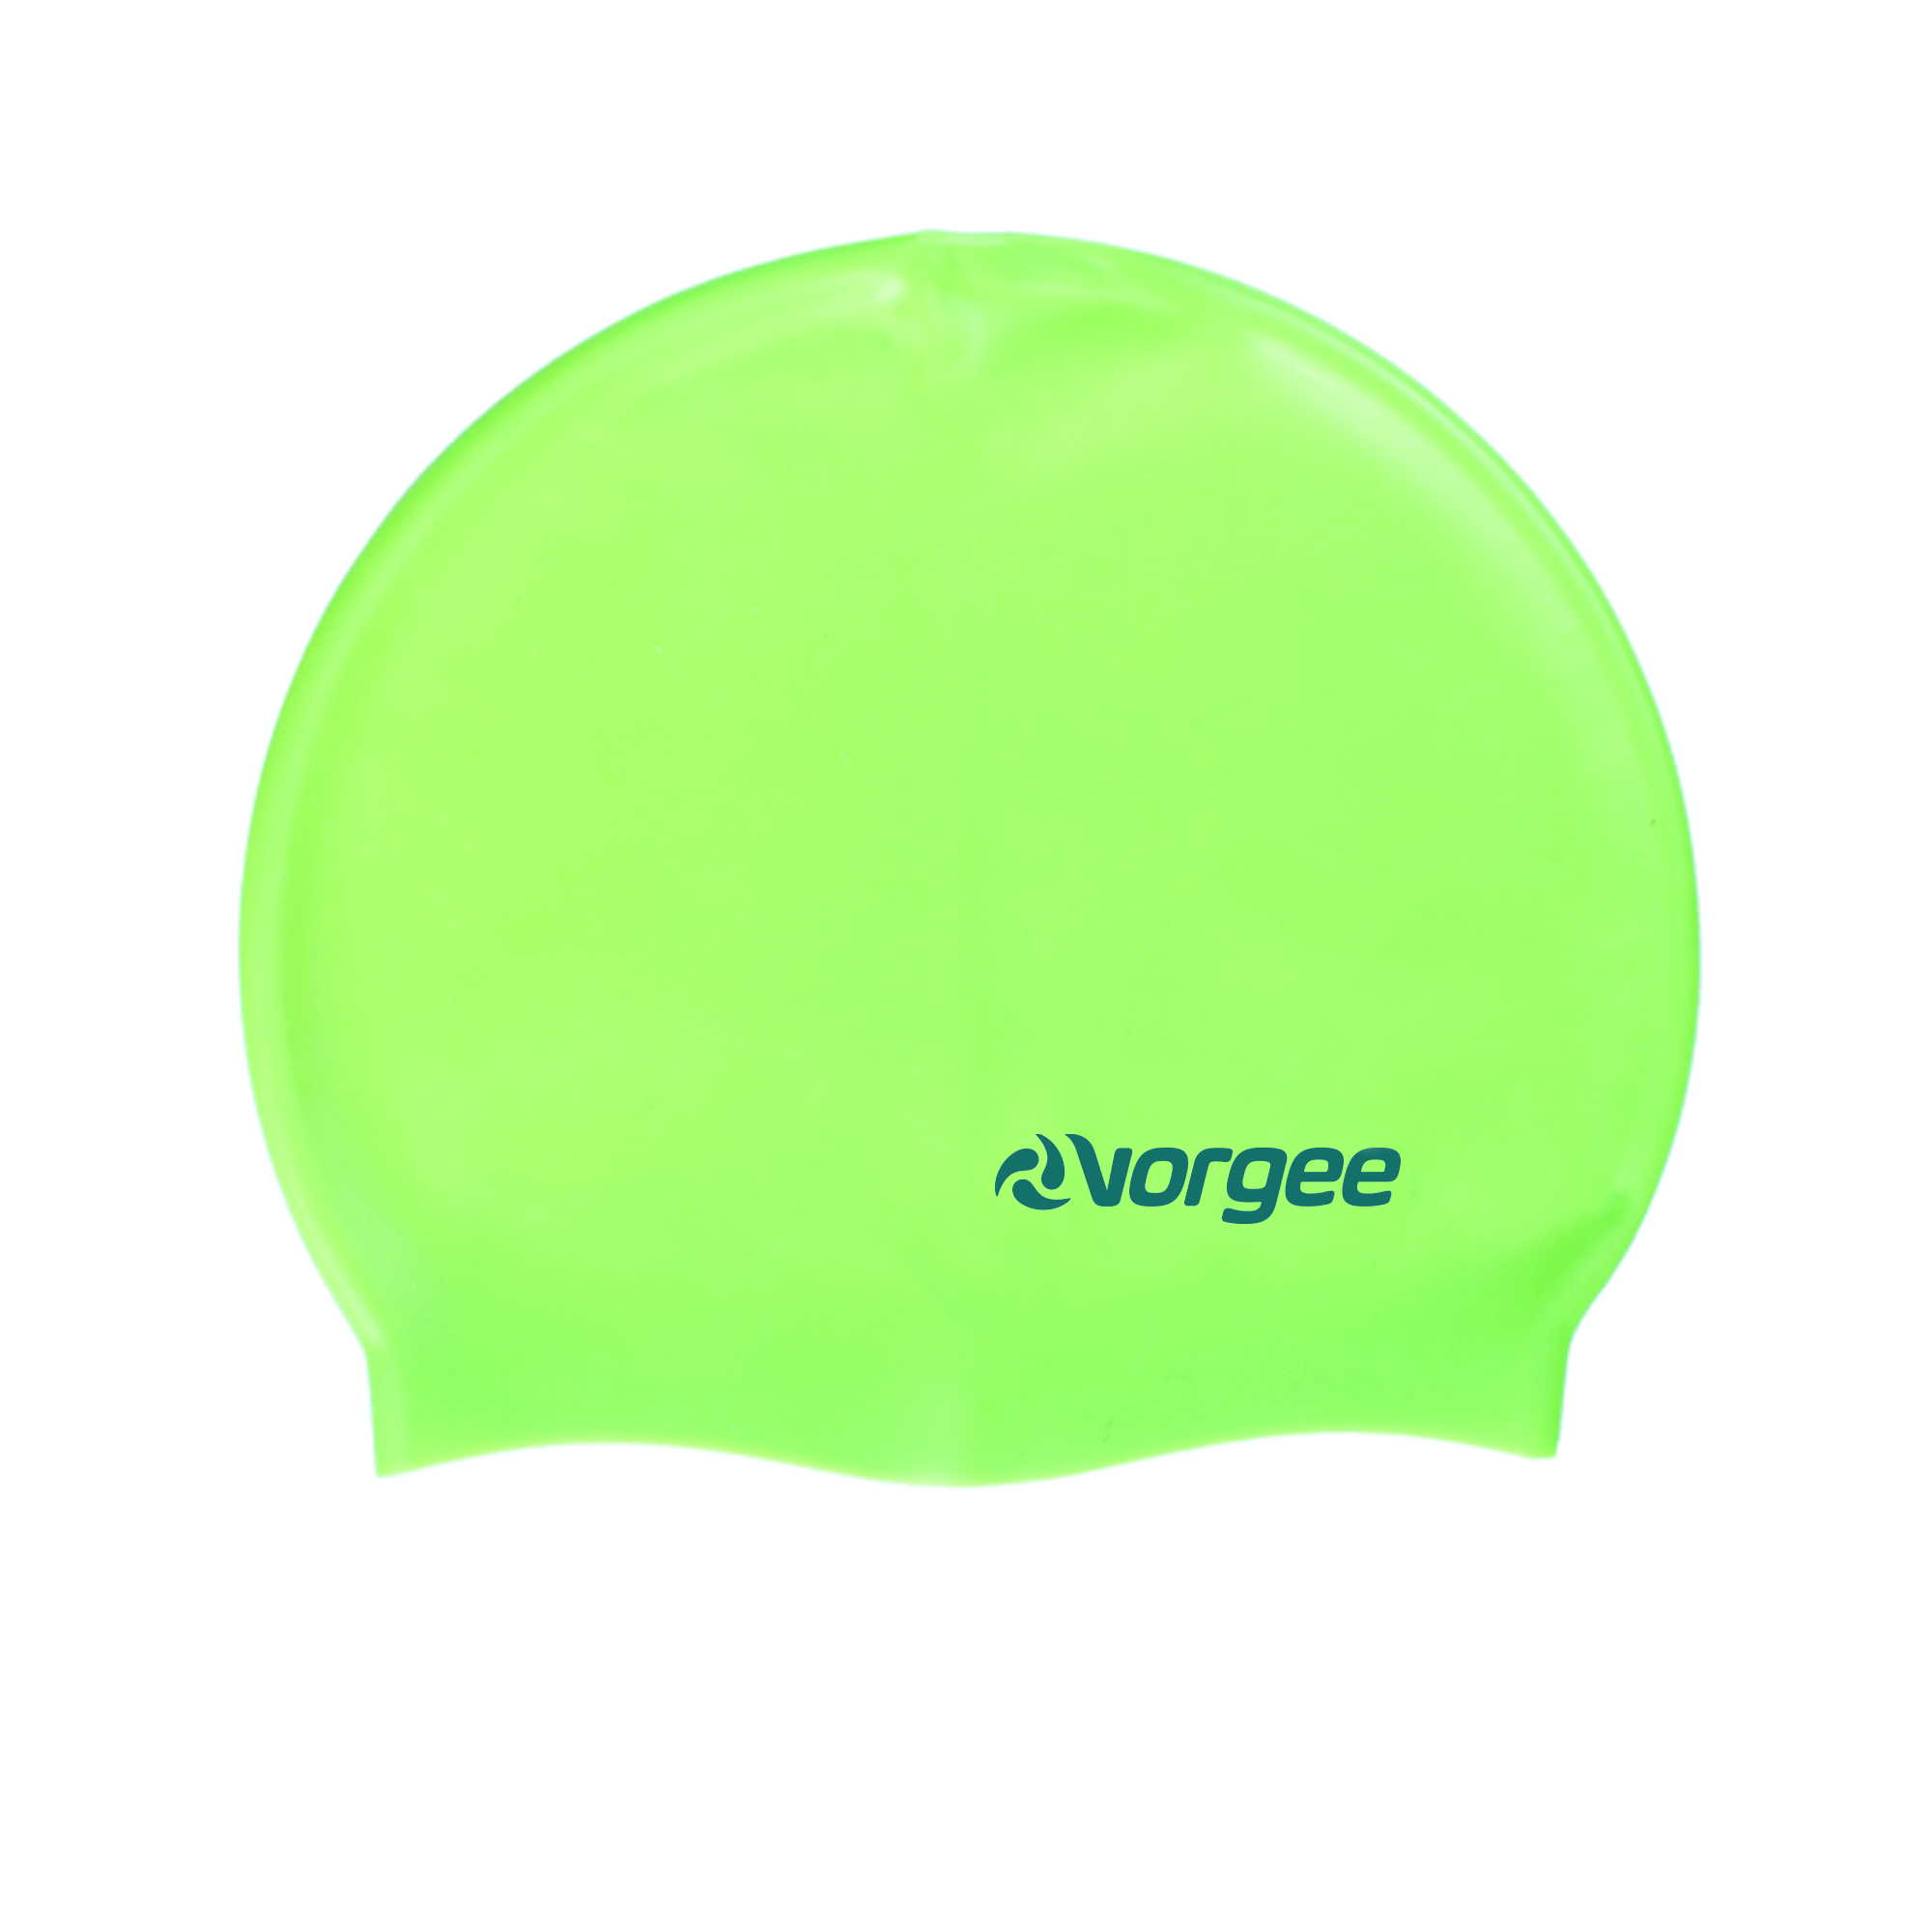 Vorgee Silicone Swimming Cap